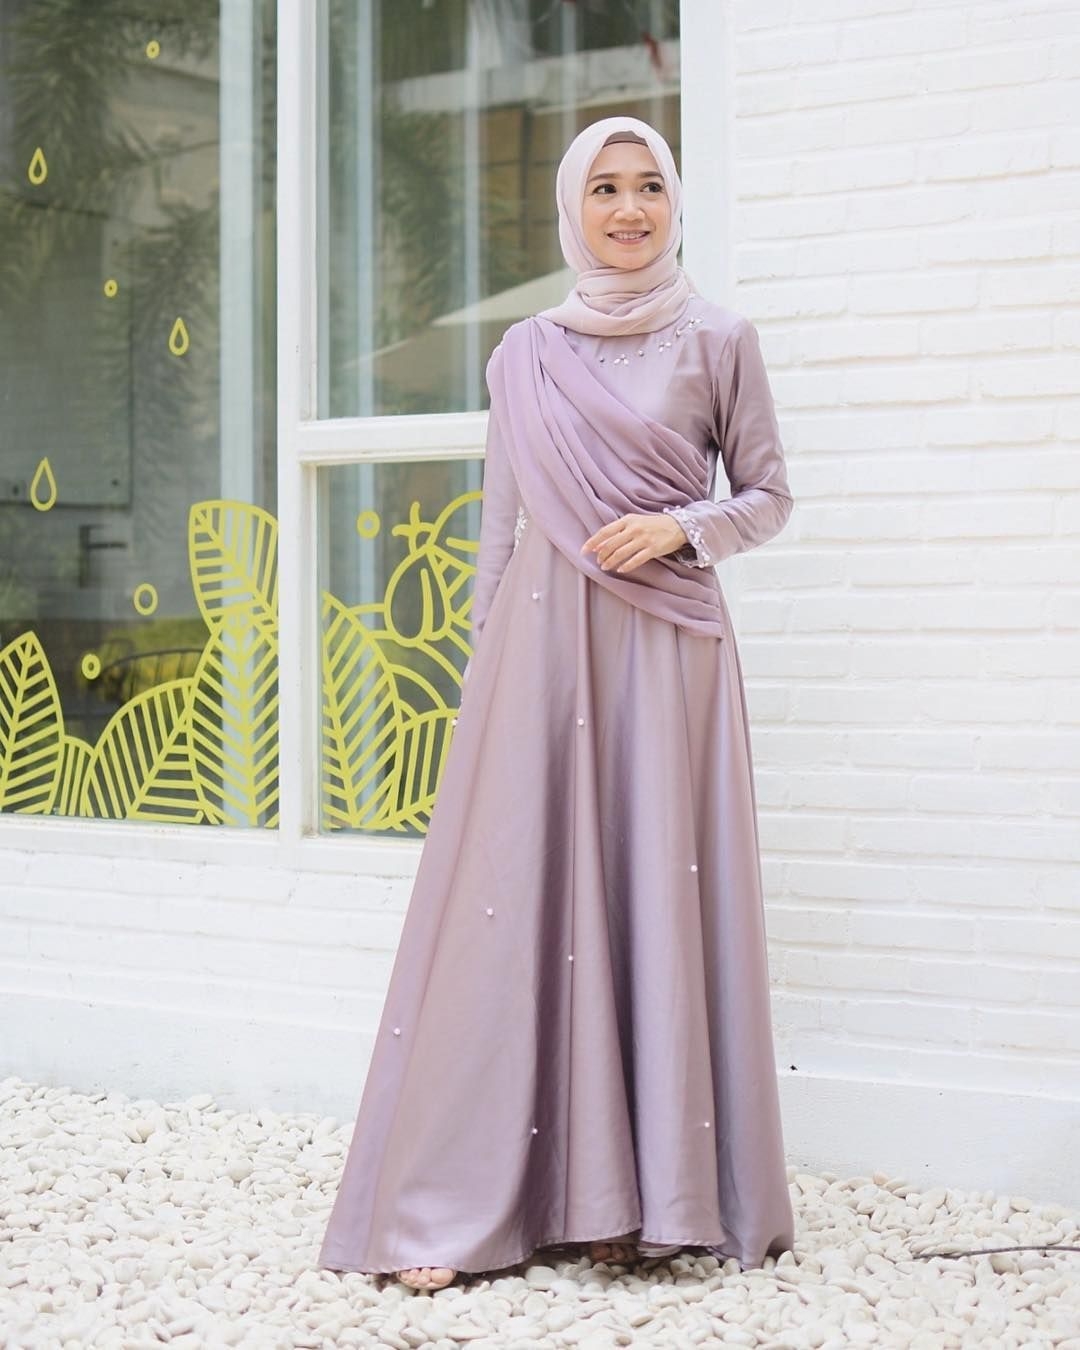 baju kondangan simple hijab dengan dress kekinian